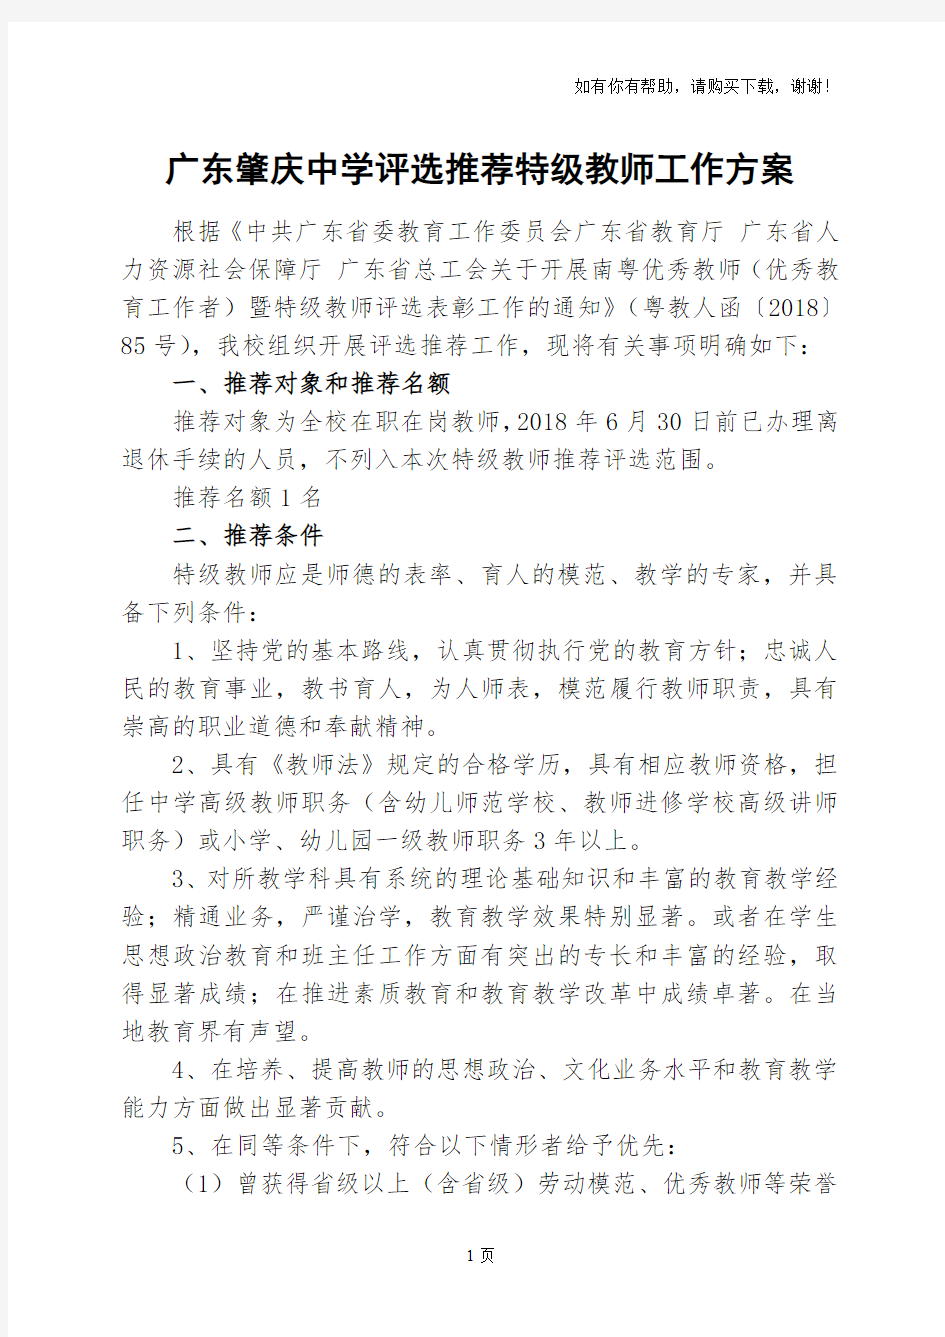 广东肇庆中学评选推荐特级教师工作方案